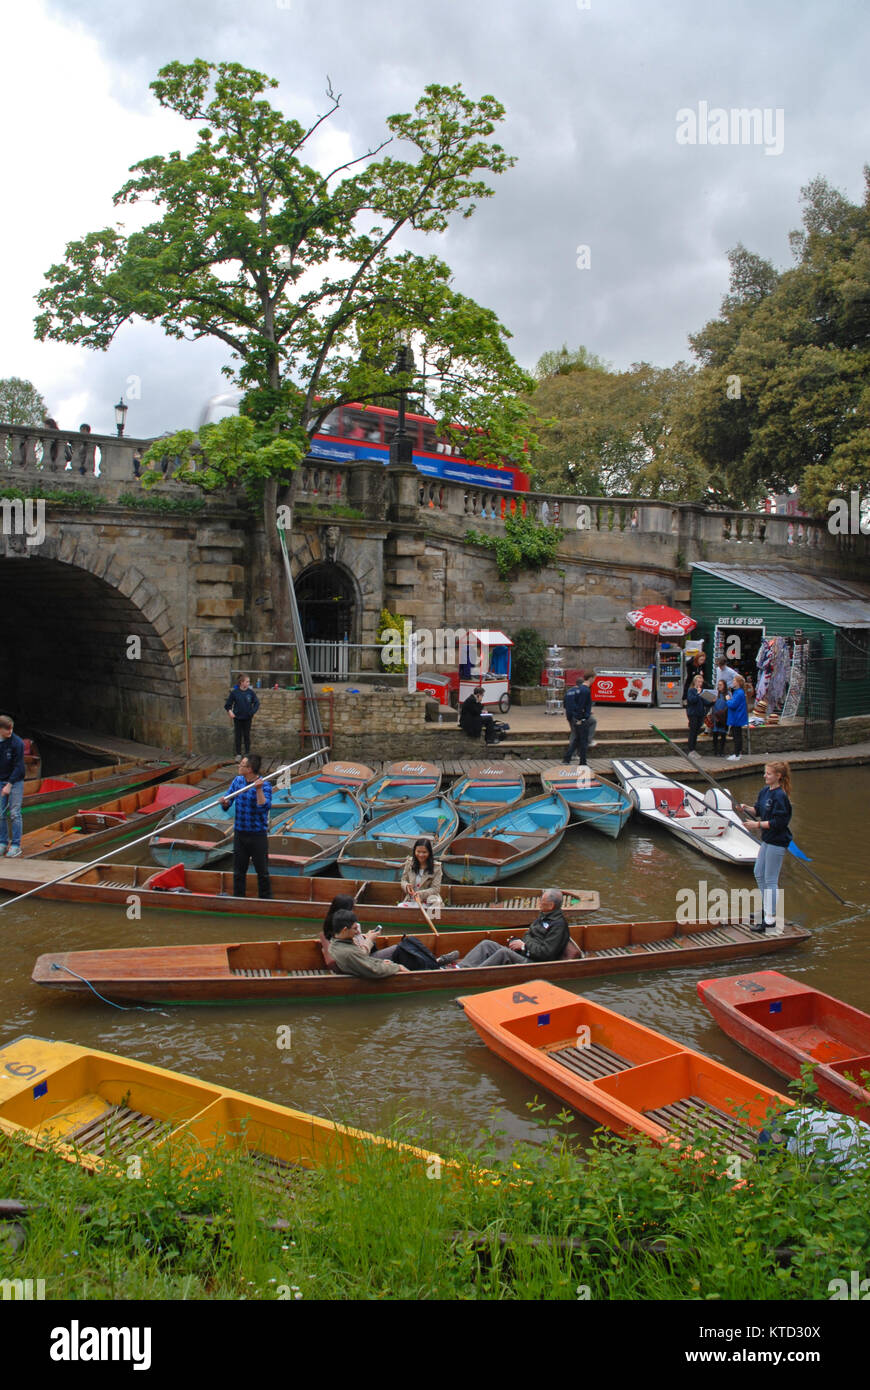 Oxford, United Kingdom - May 10: Colorful punting boats at Magdalen bridge Stock Photo